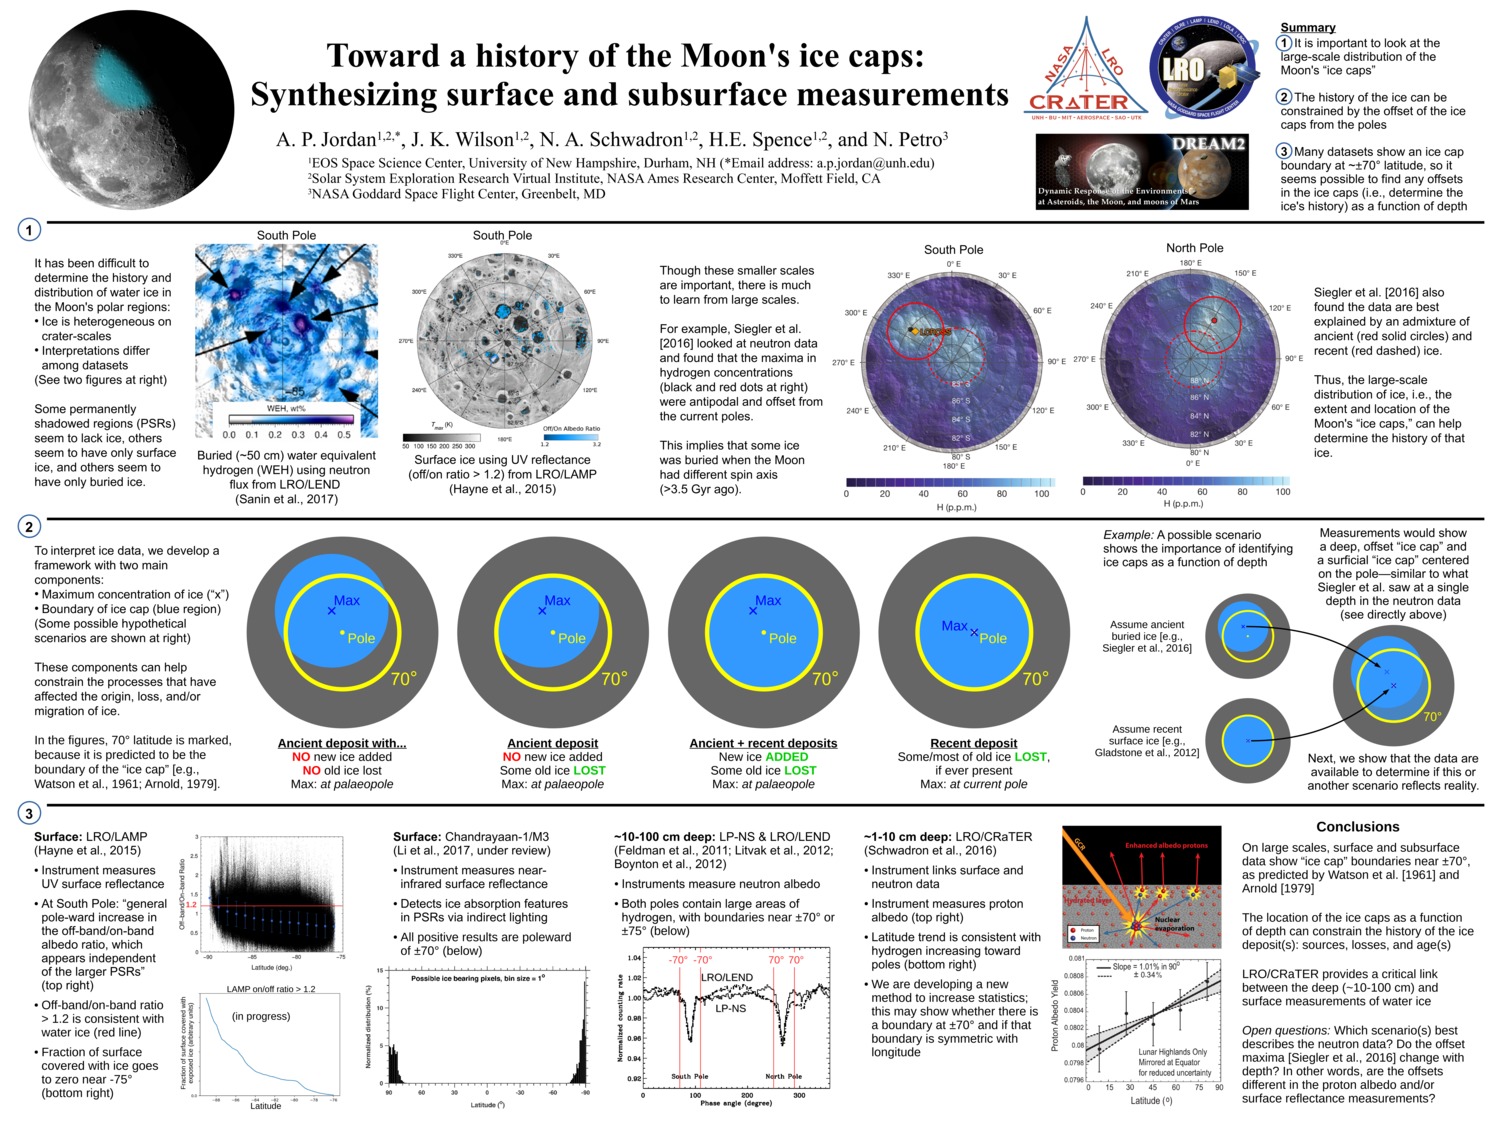 Toward A History Of The Moon's Ice Caps by api44